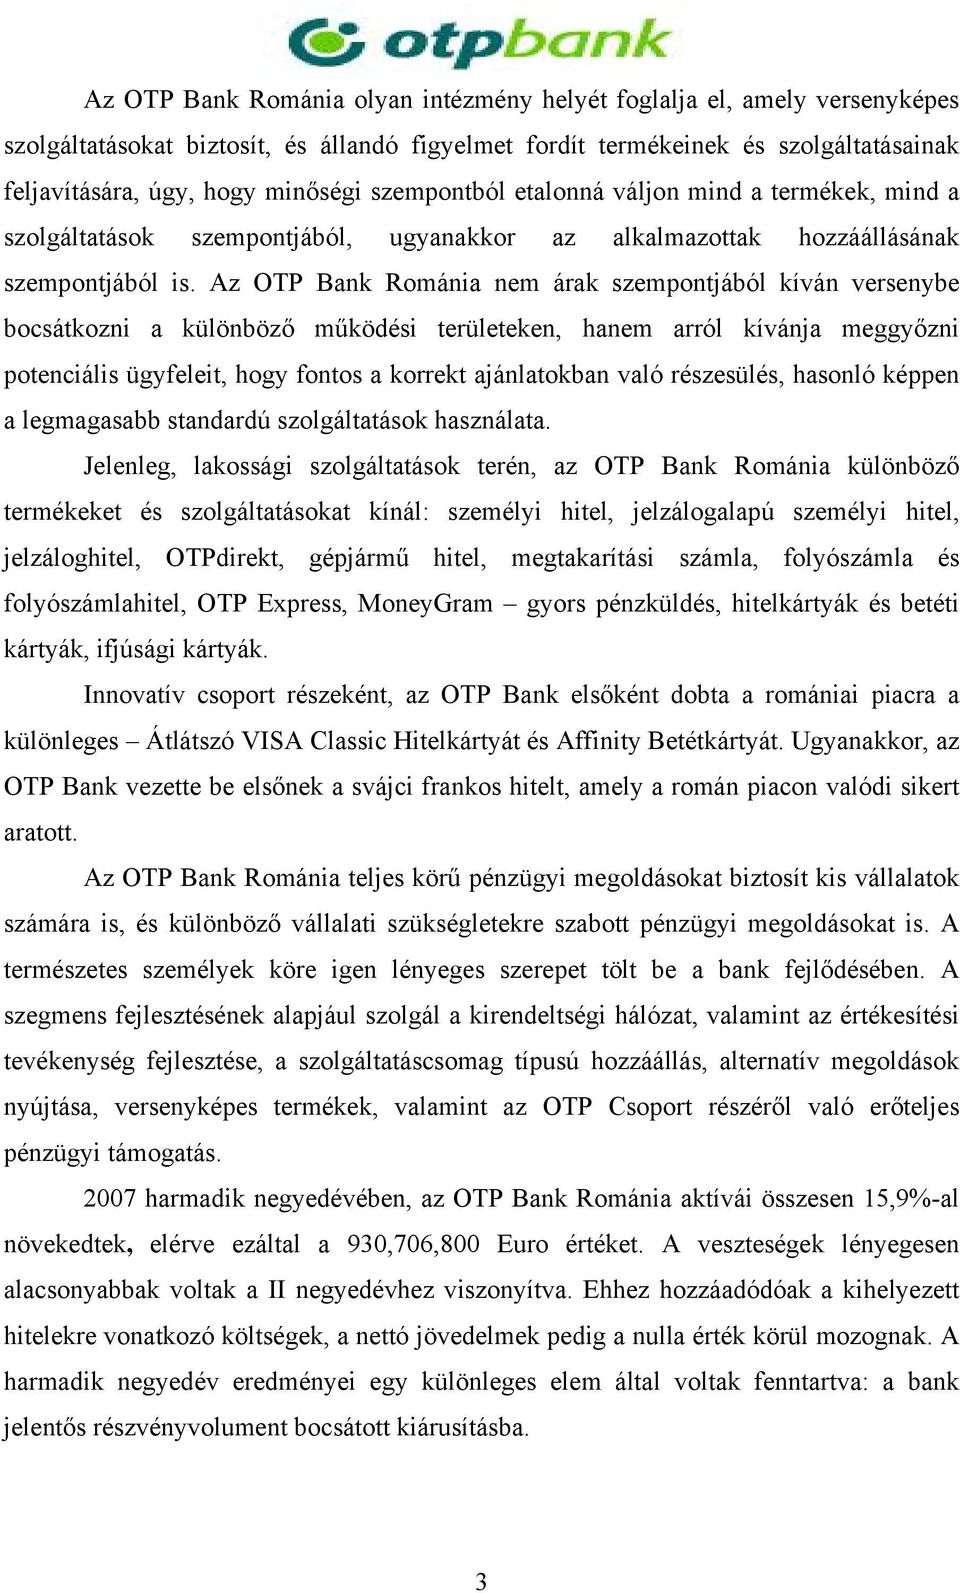 Az OTP Bank Románia nem árak szempontjából kíván versenybe bocsátkozni a különböző működési területeken, hanem arról kívánja meggyőzni potenciális ügyfeleit, hogy fontos a korrekt ajánlatokban való